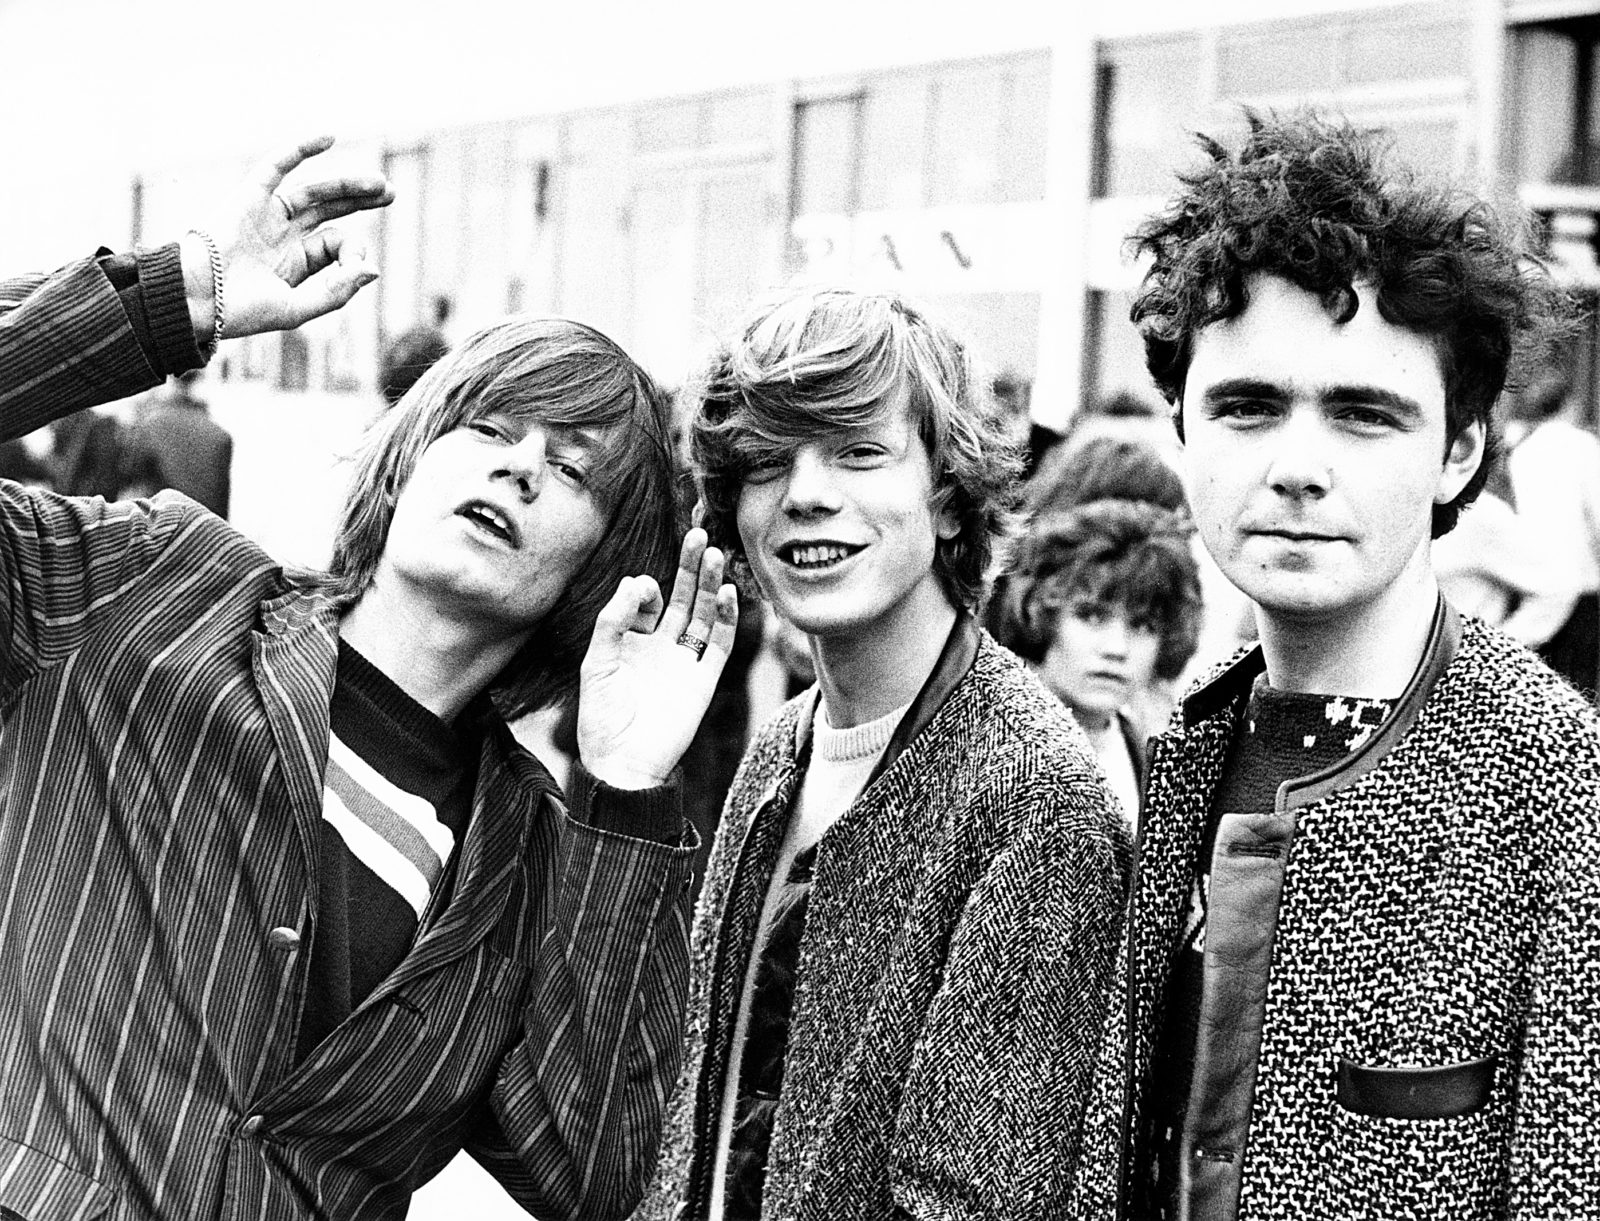 BRD_1965_2222_Fans_erwarten_Rolling_Stones